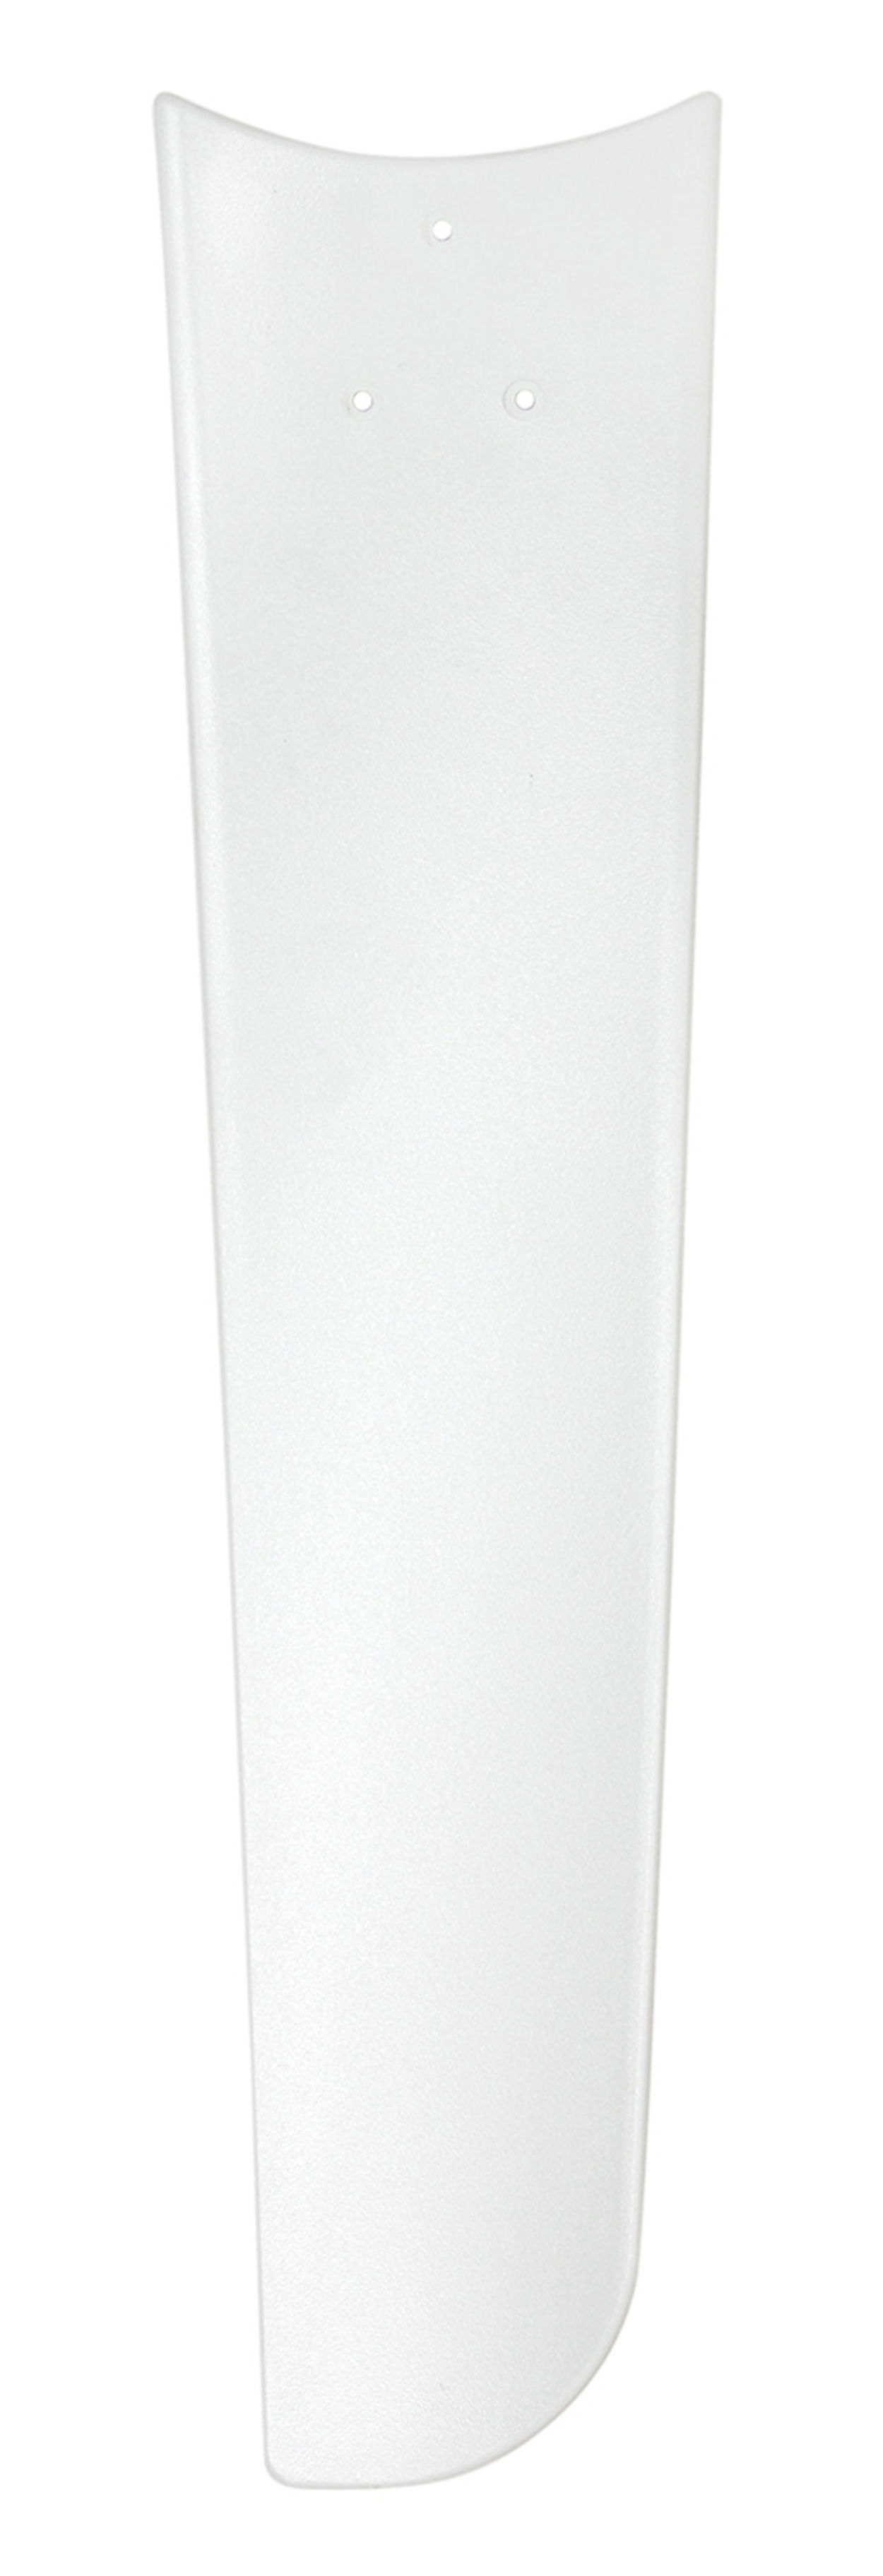 CASAFAN Mirage Deckenventilator Watt) (62 Weiß